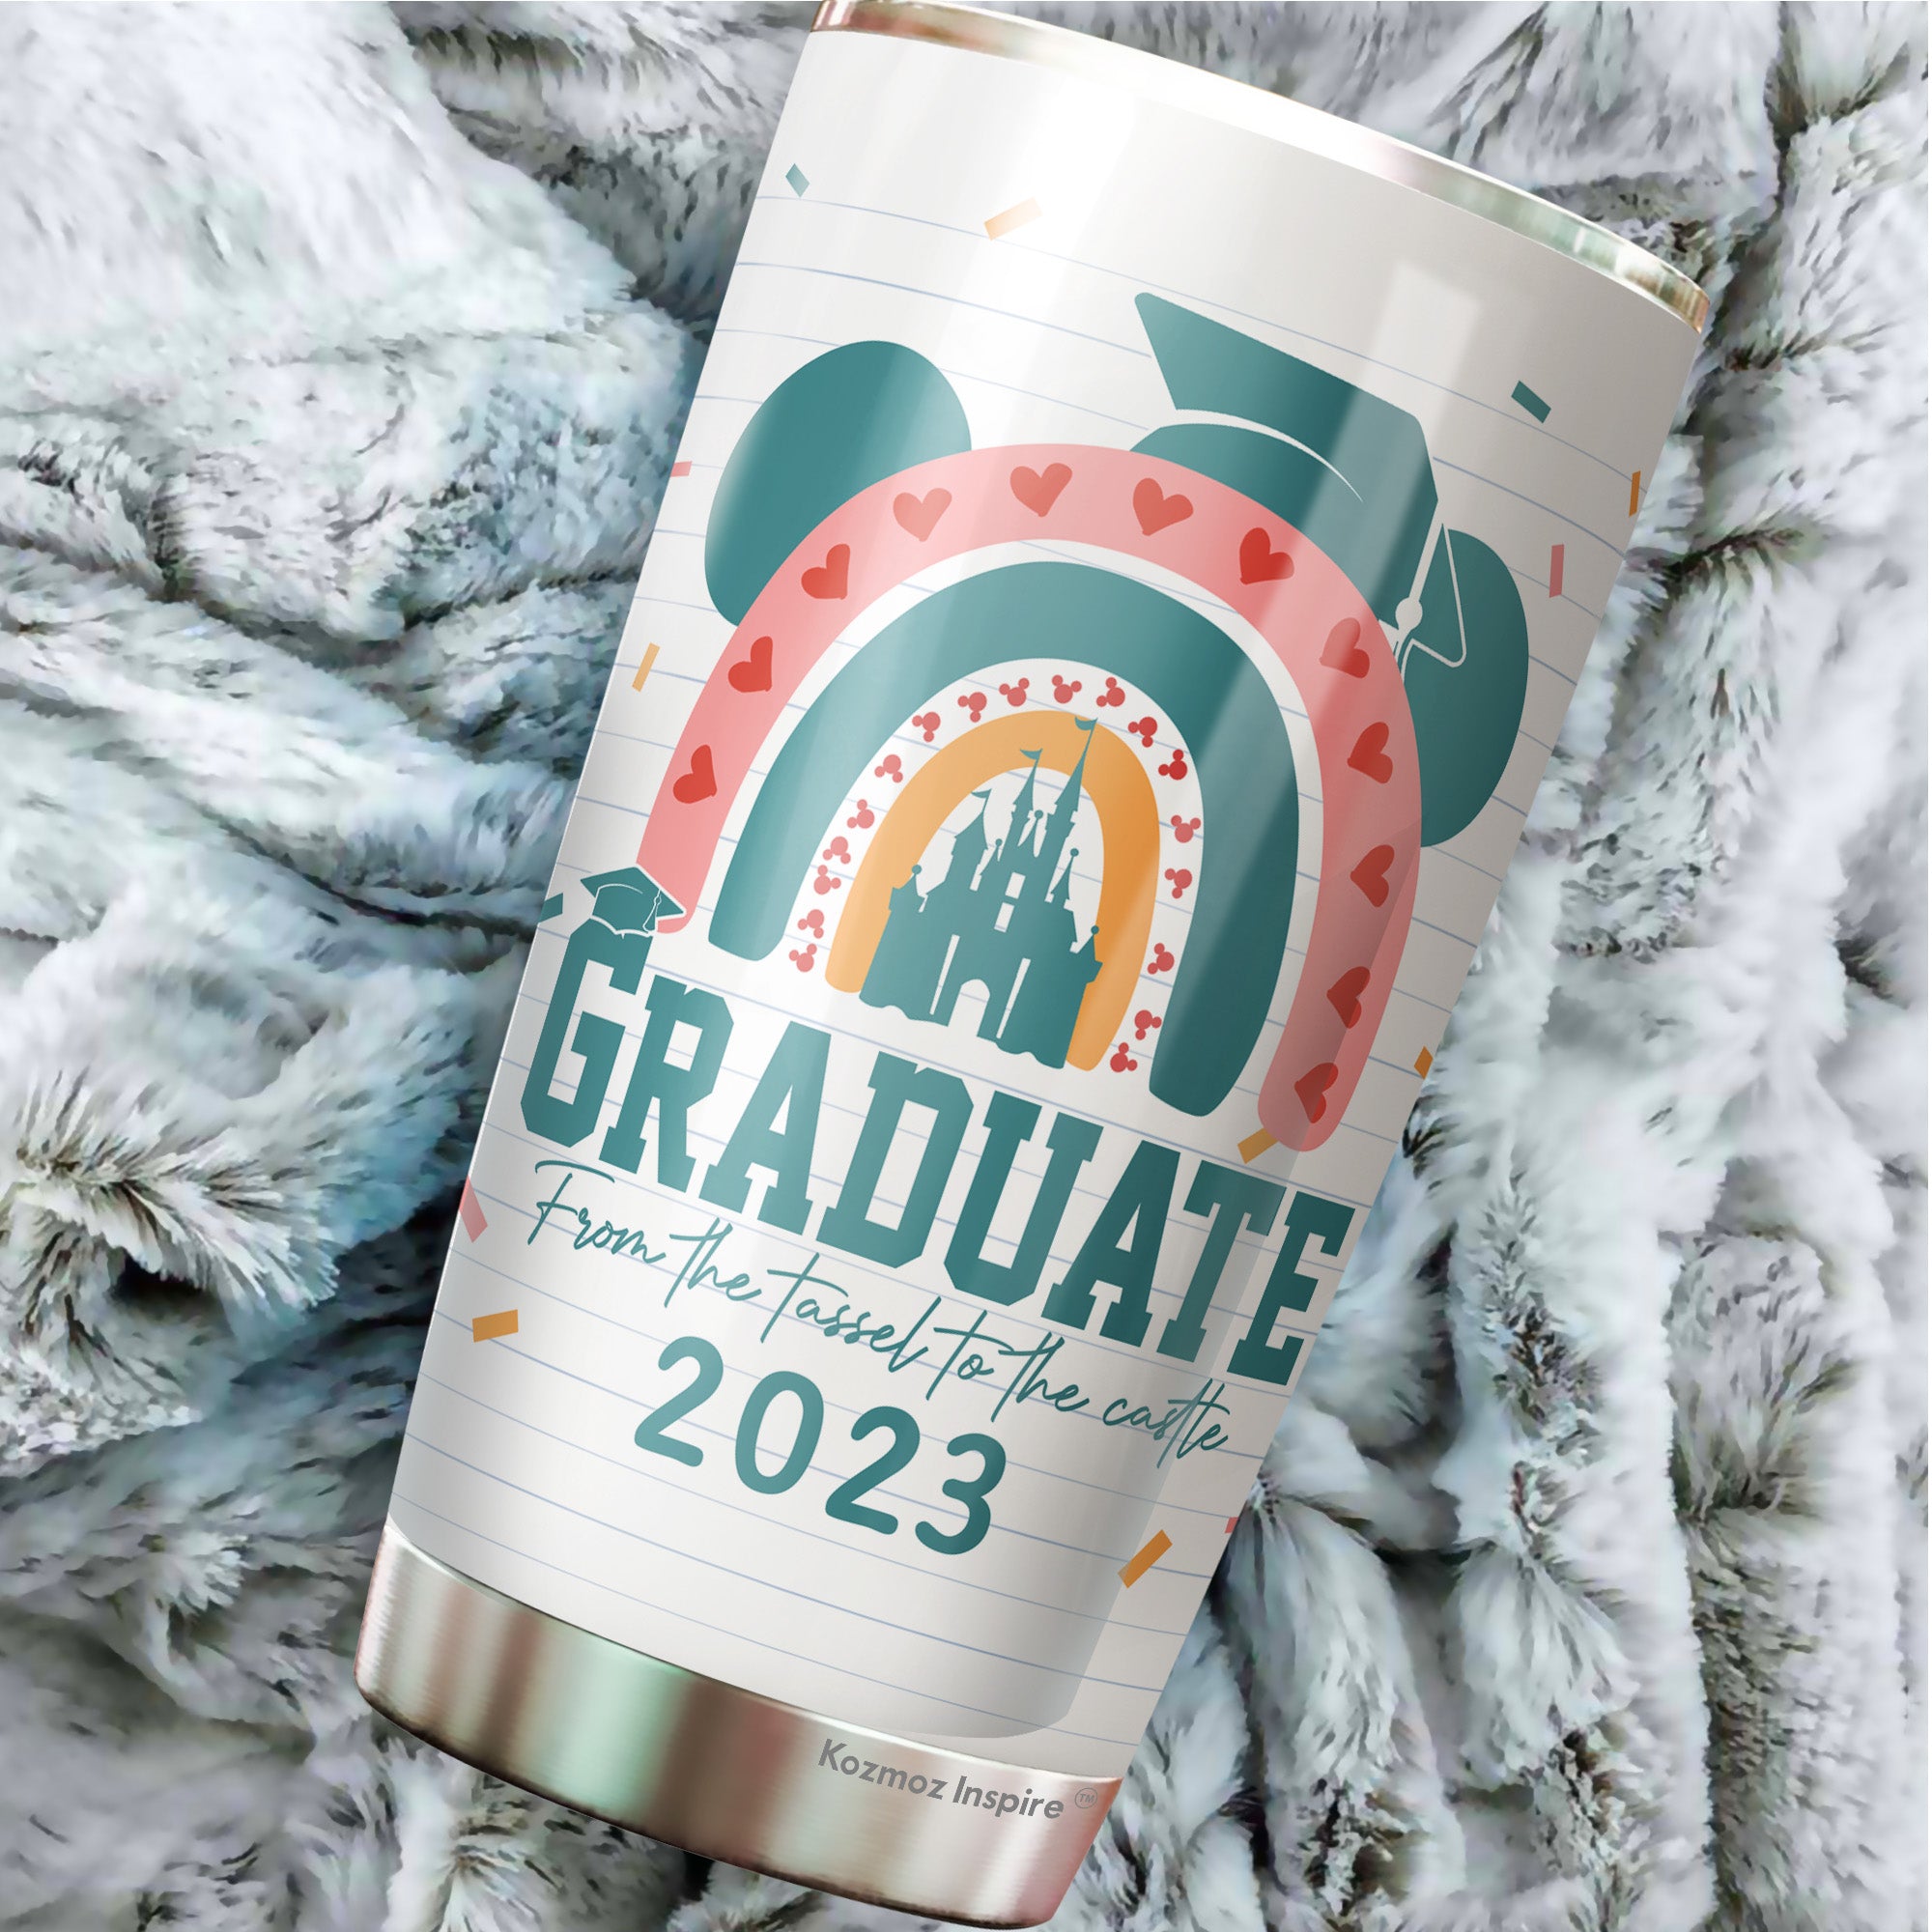 20 unique graduation gifts for 2023 graduates